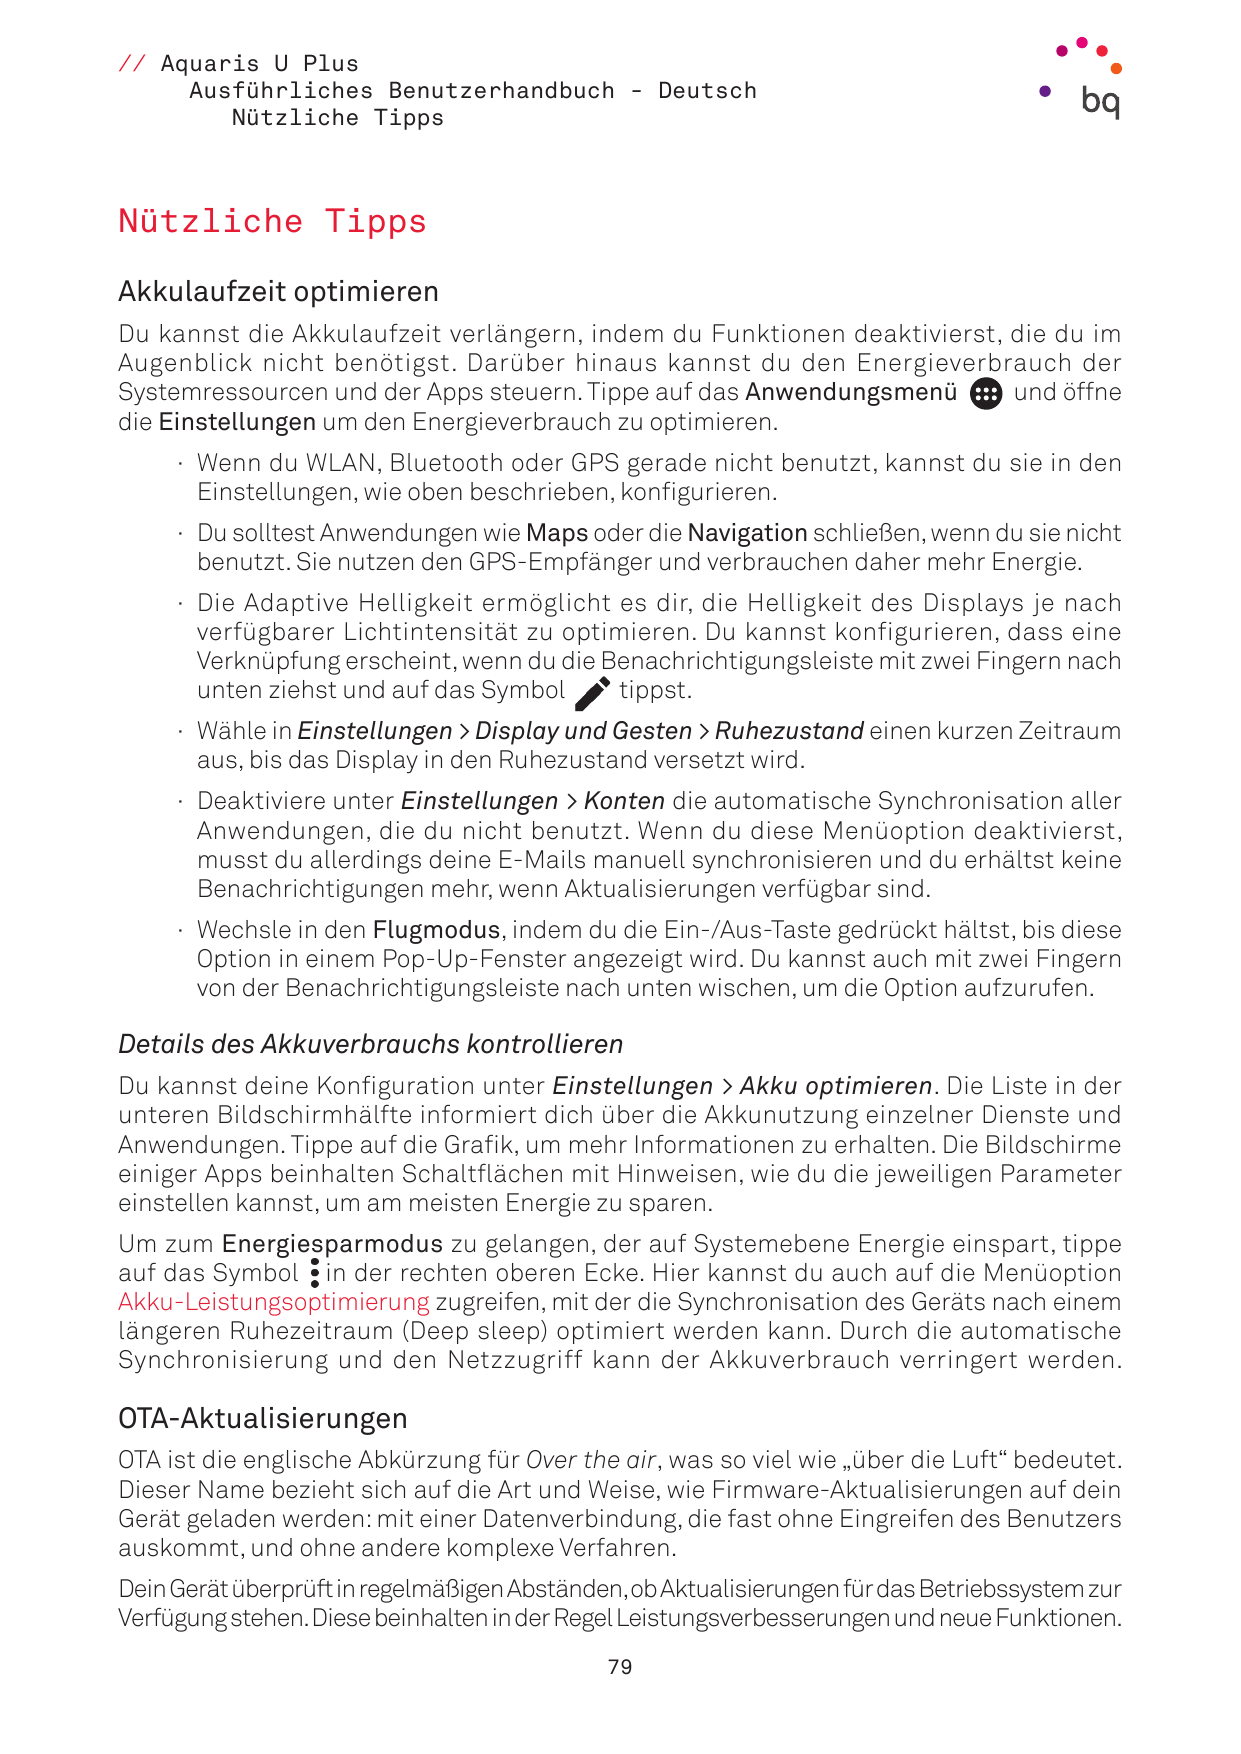 // Aquaris U PlusAusführliches Benutzerhandbuch - DeutschNützliche TippsNützliche TippsAkkulaufzeit optimierenDu kannst die Akku